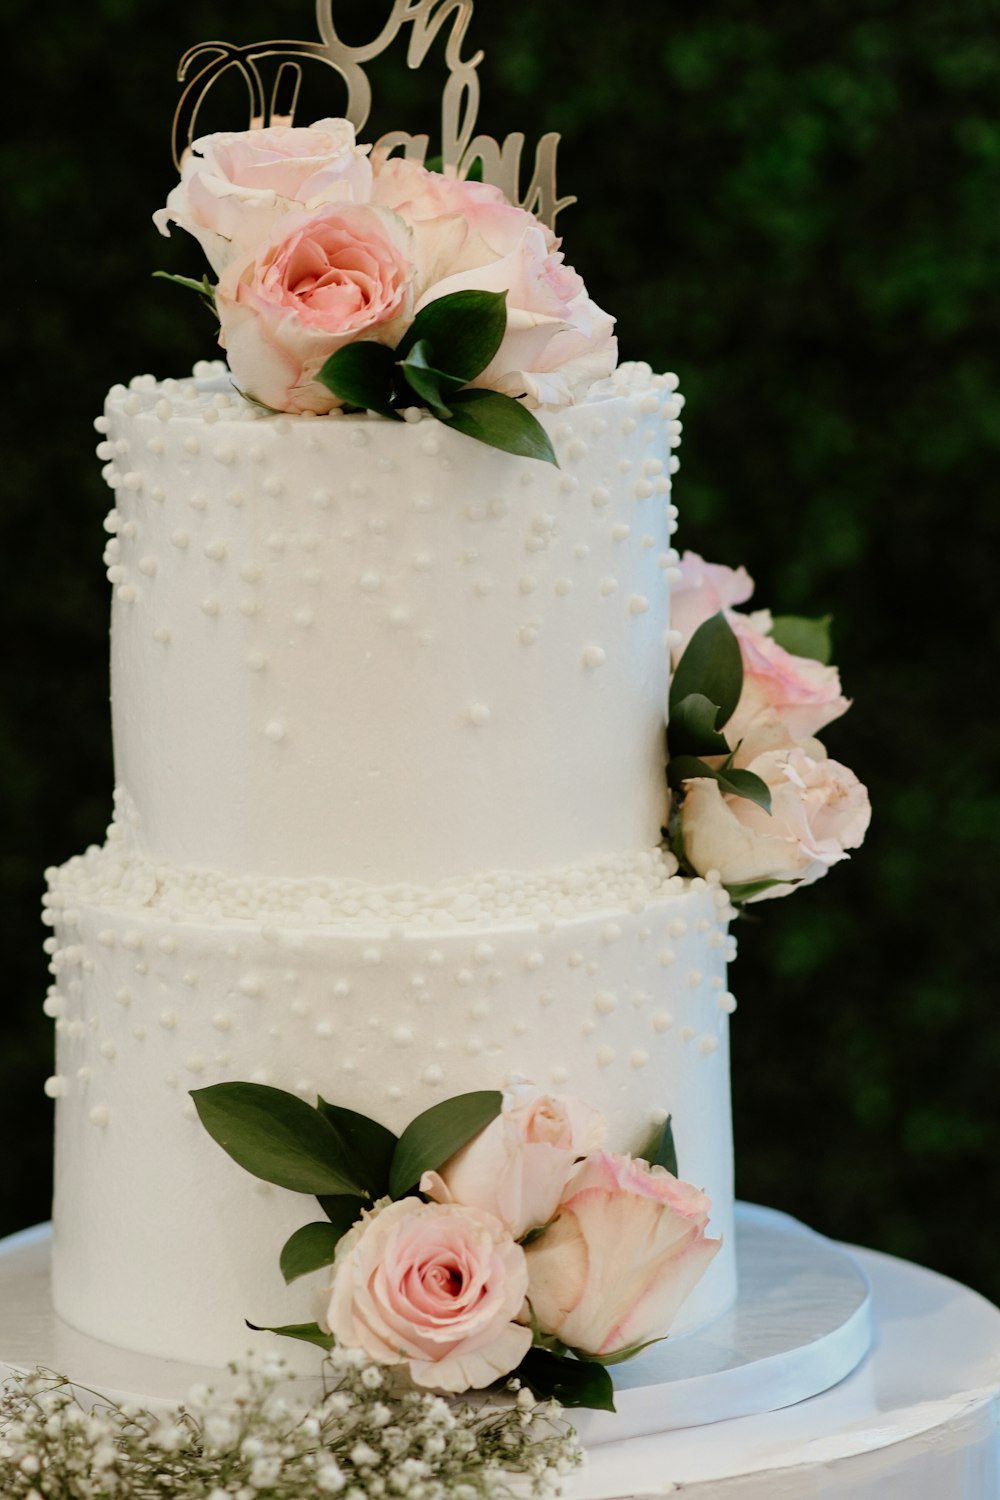 Un gâteau blanc aux roses roses